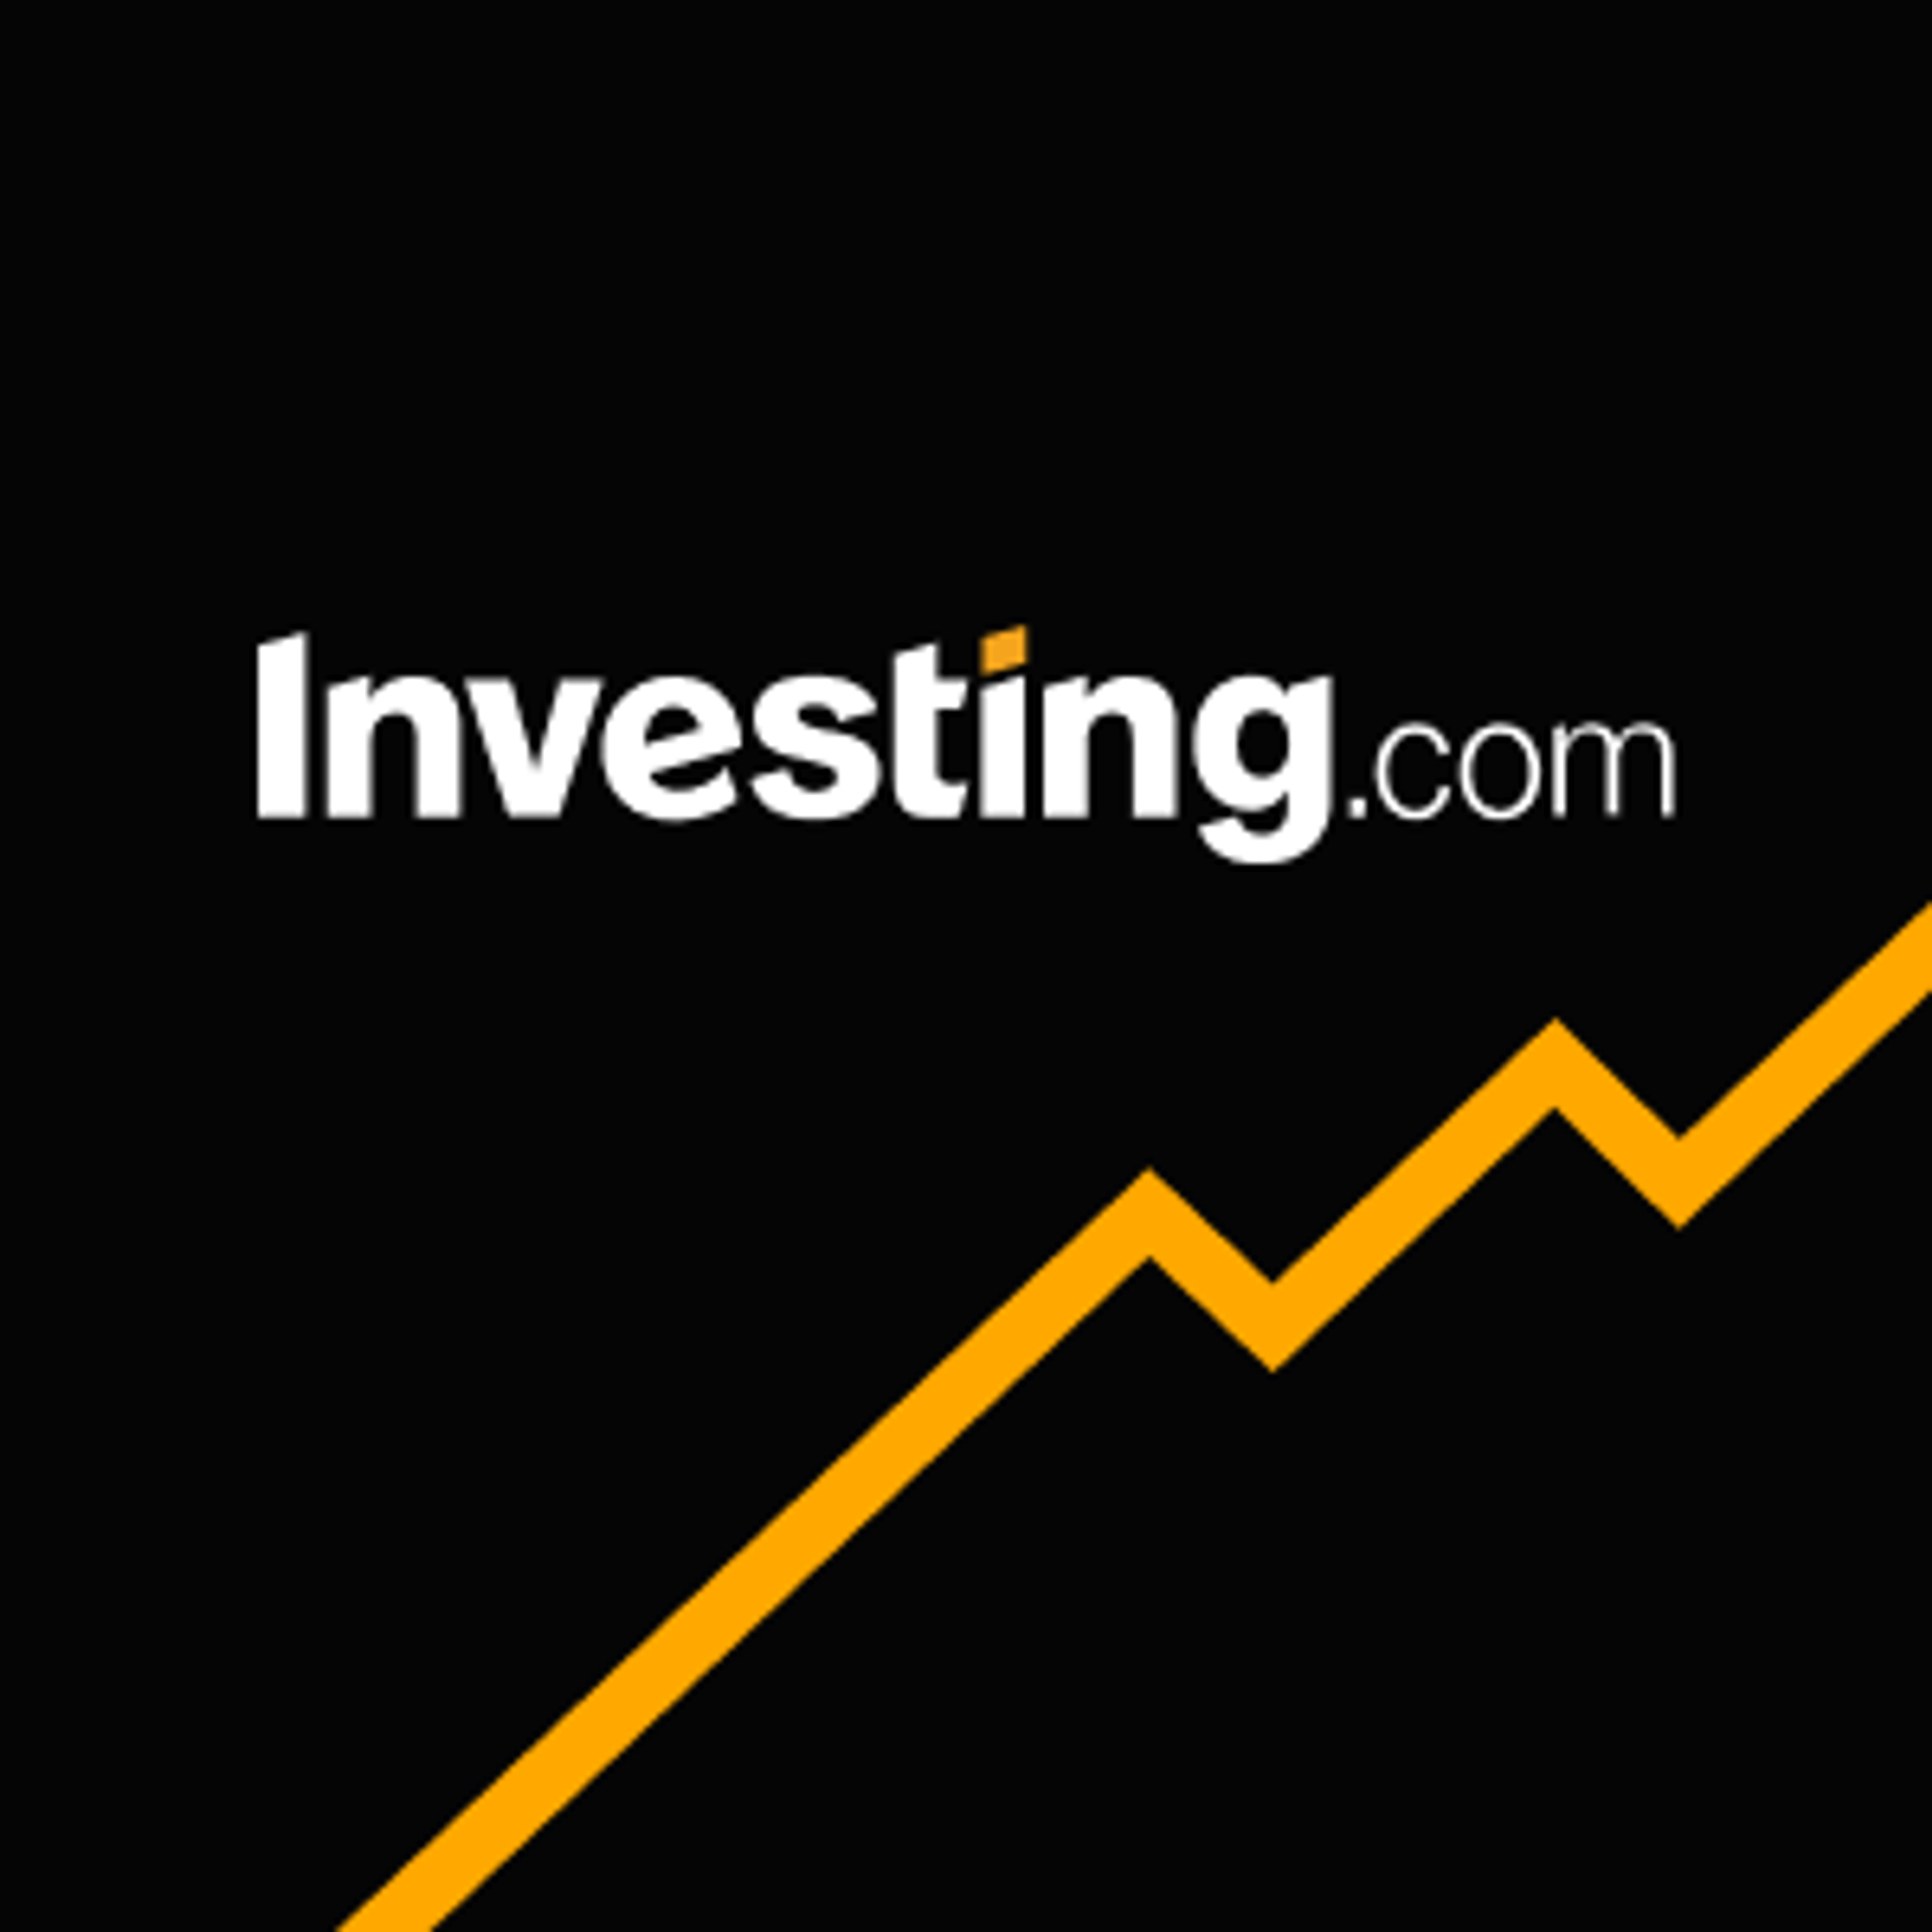 特斯拉(TSLA)财务比率_股票基本面分析_英为财情Investing.com